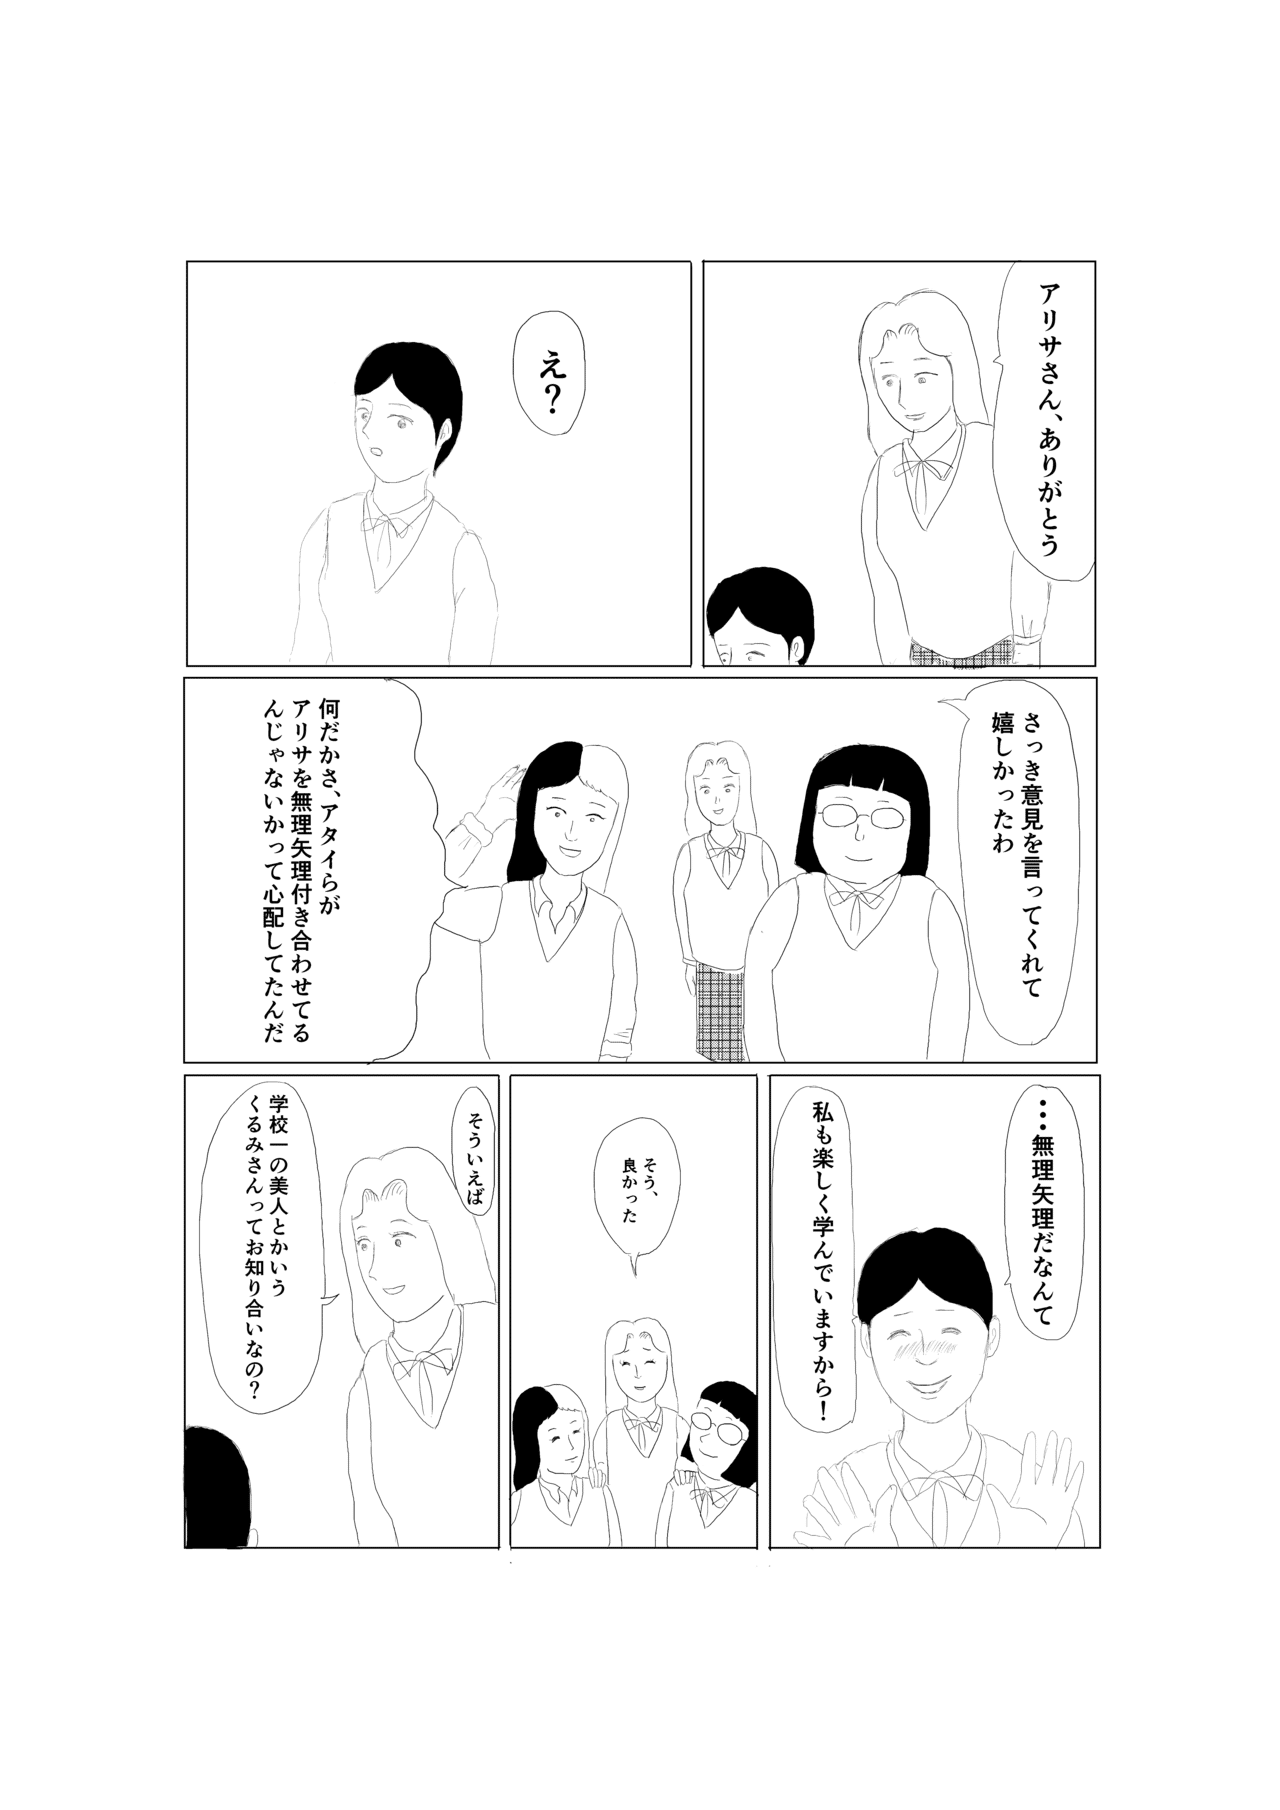 秘密結社恋愛クラブ第3話_006